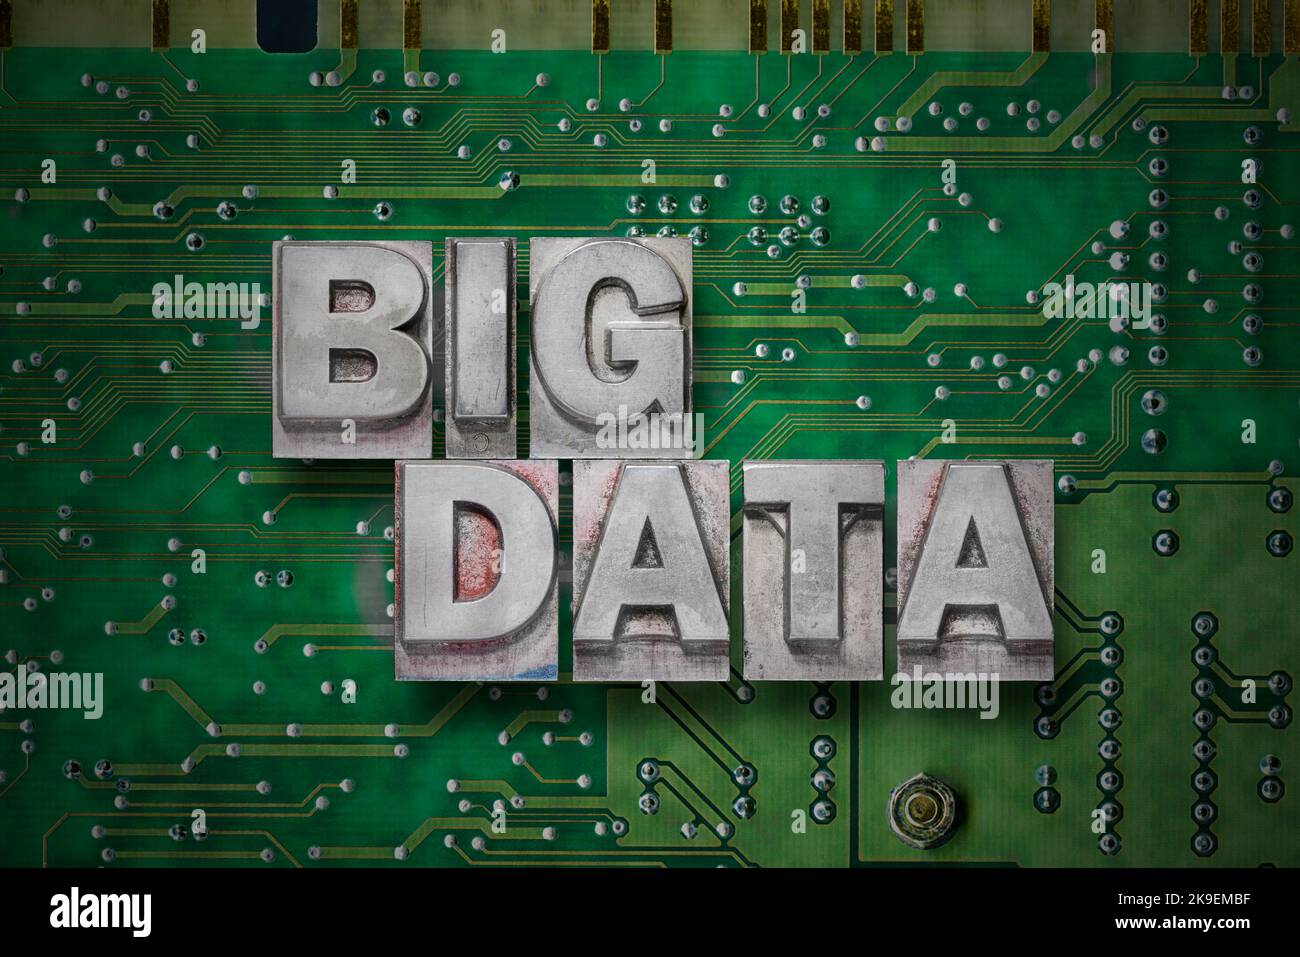 Phrase de big data fait de la typographie métallique blocs sur le fond de carte pc Banque D'Images